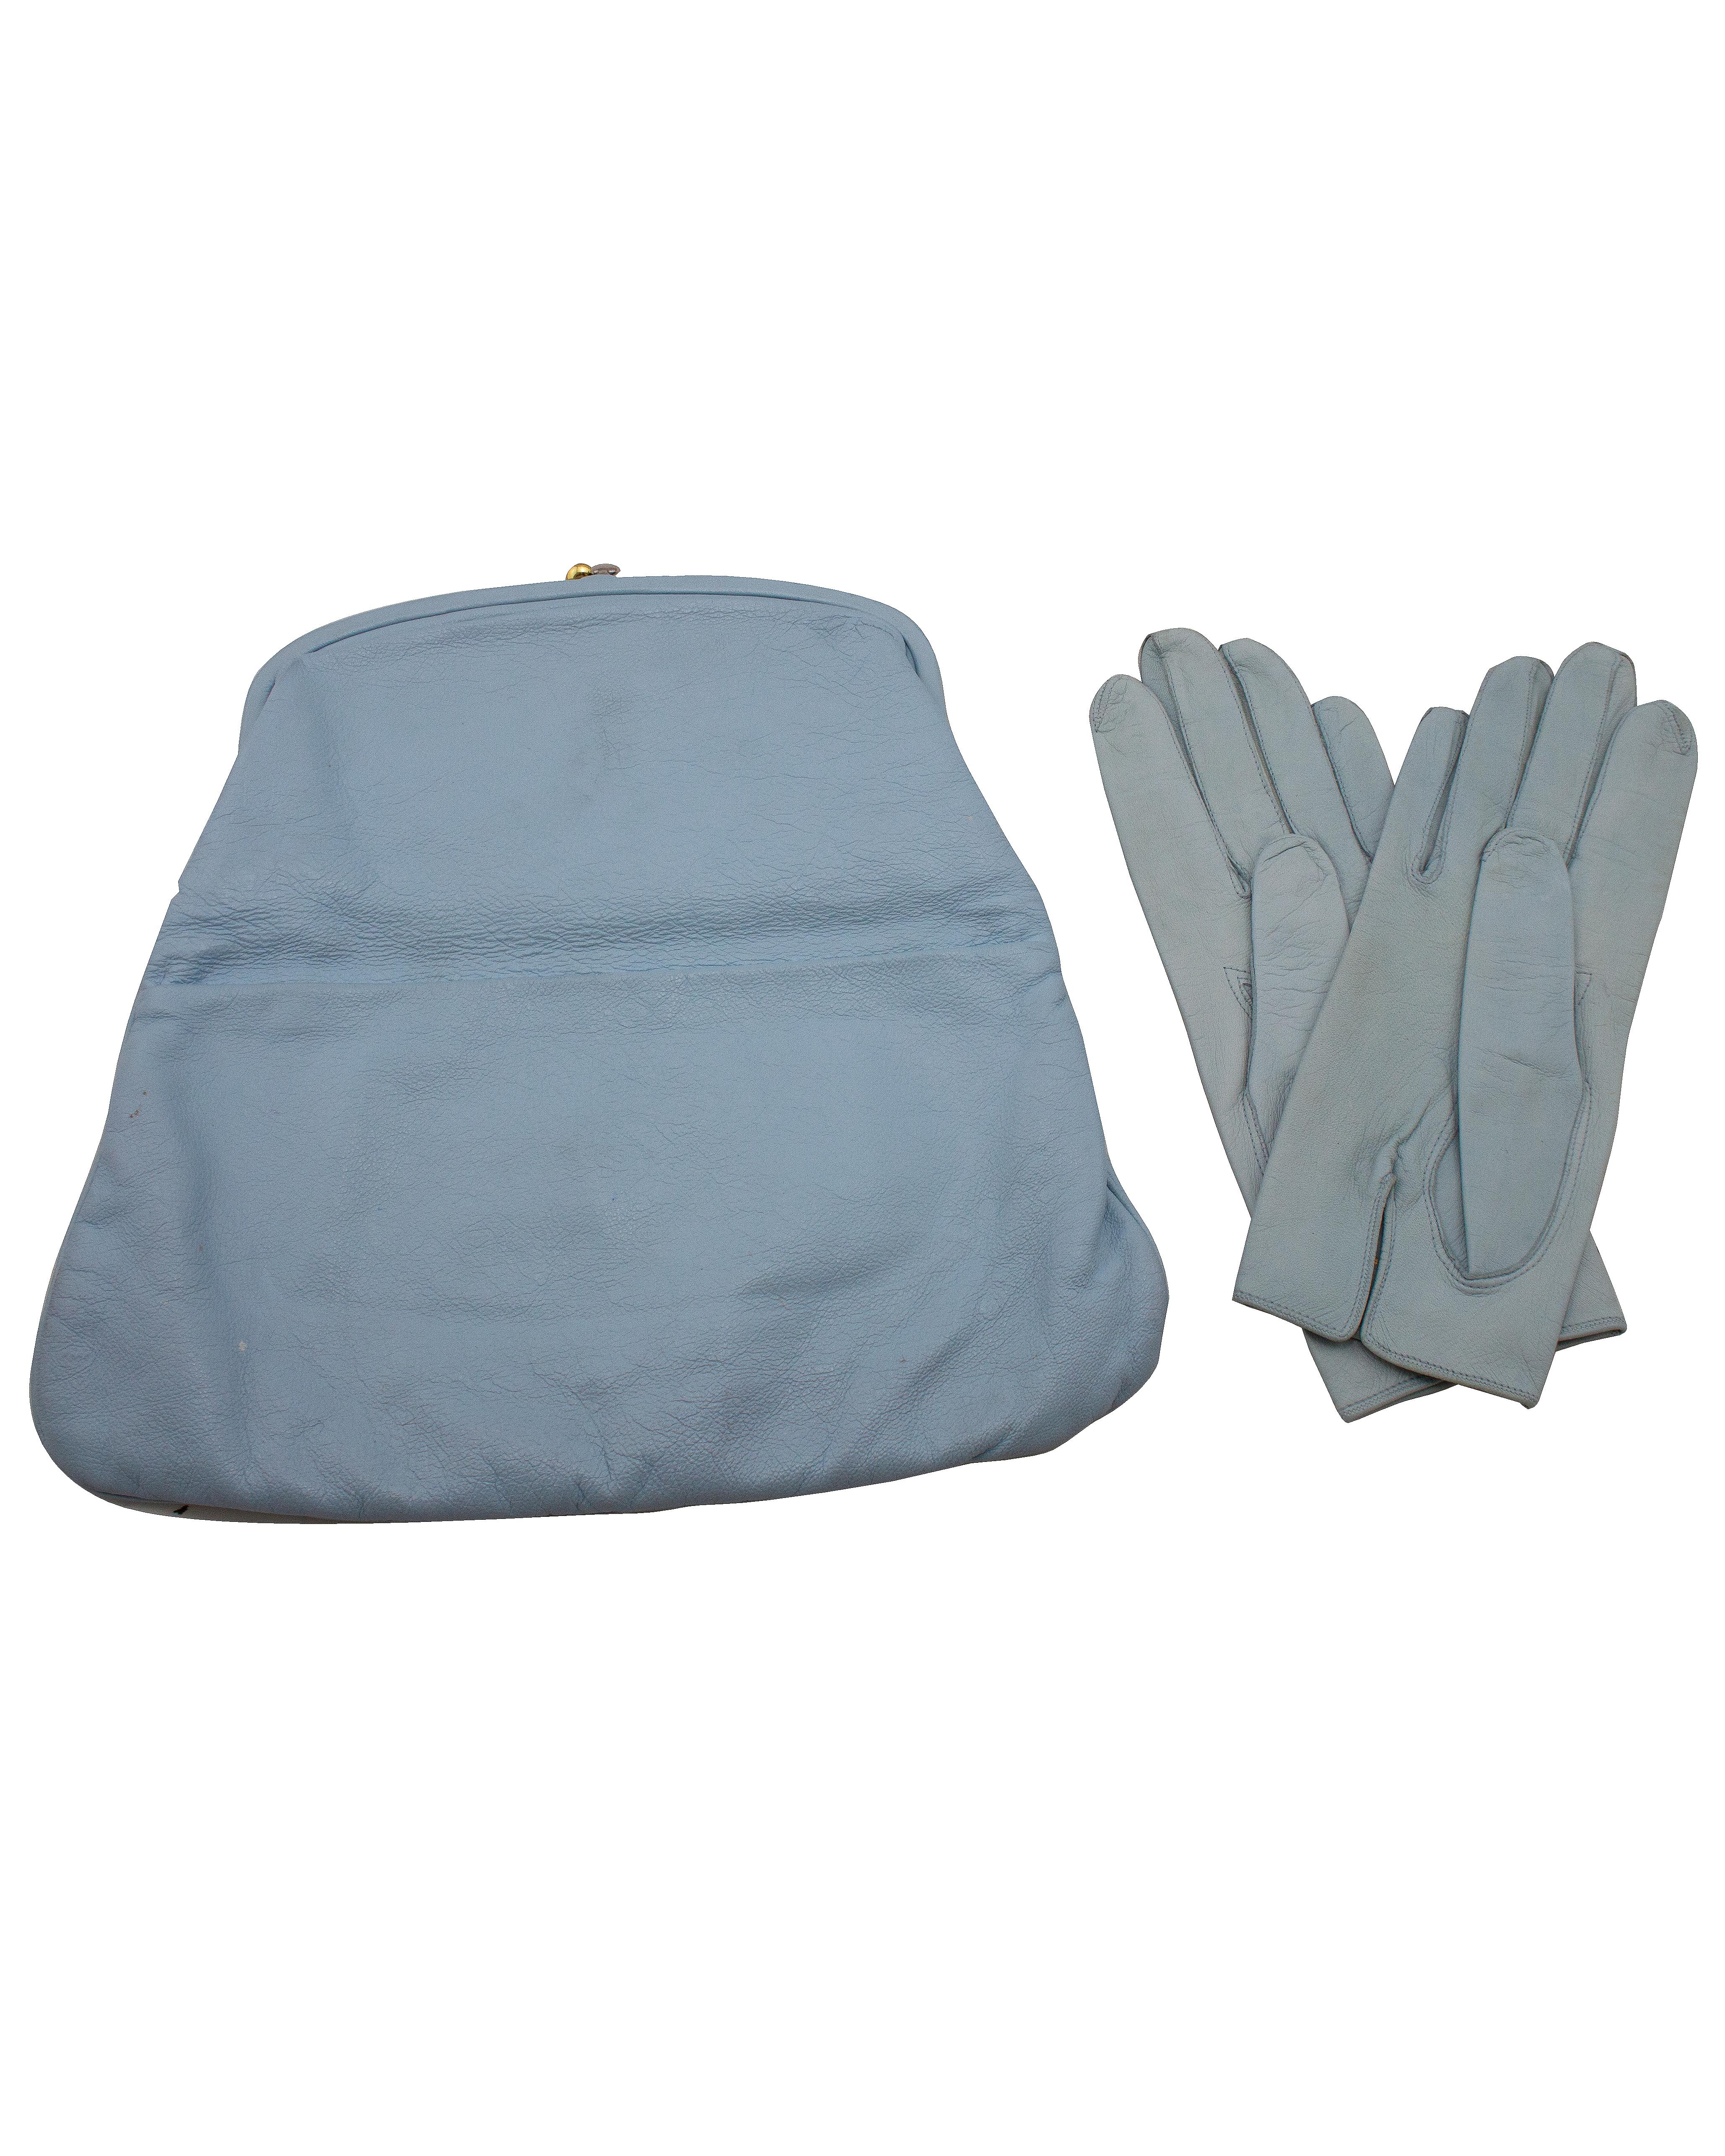 Pochette classique Coblentz des années 1950 en cuir de chevreau bleu layette avec gants en cuir bleu layette assortis. Rarement disponible en cuir, cette forme classique est doublée de soie cordée marine et se ferme à l'aide d'une serrure à baiser à